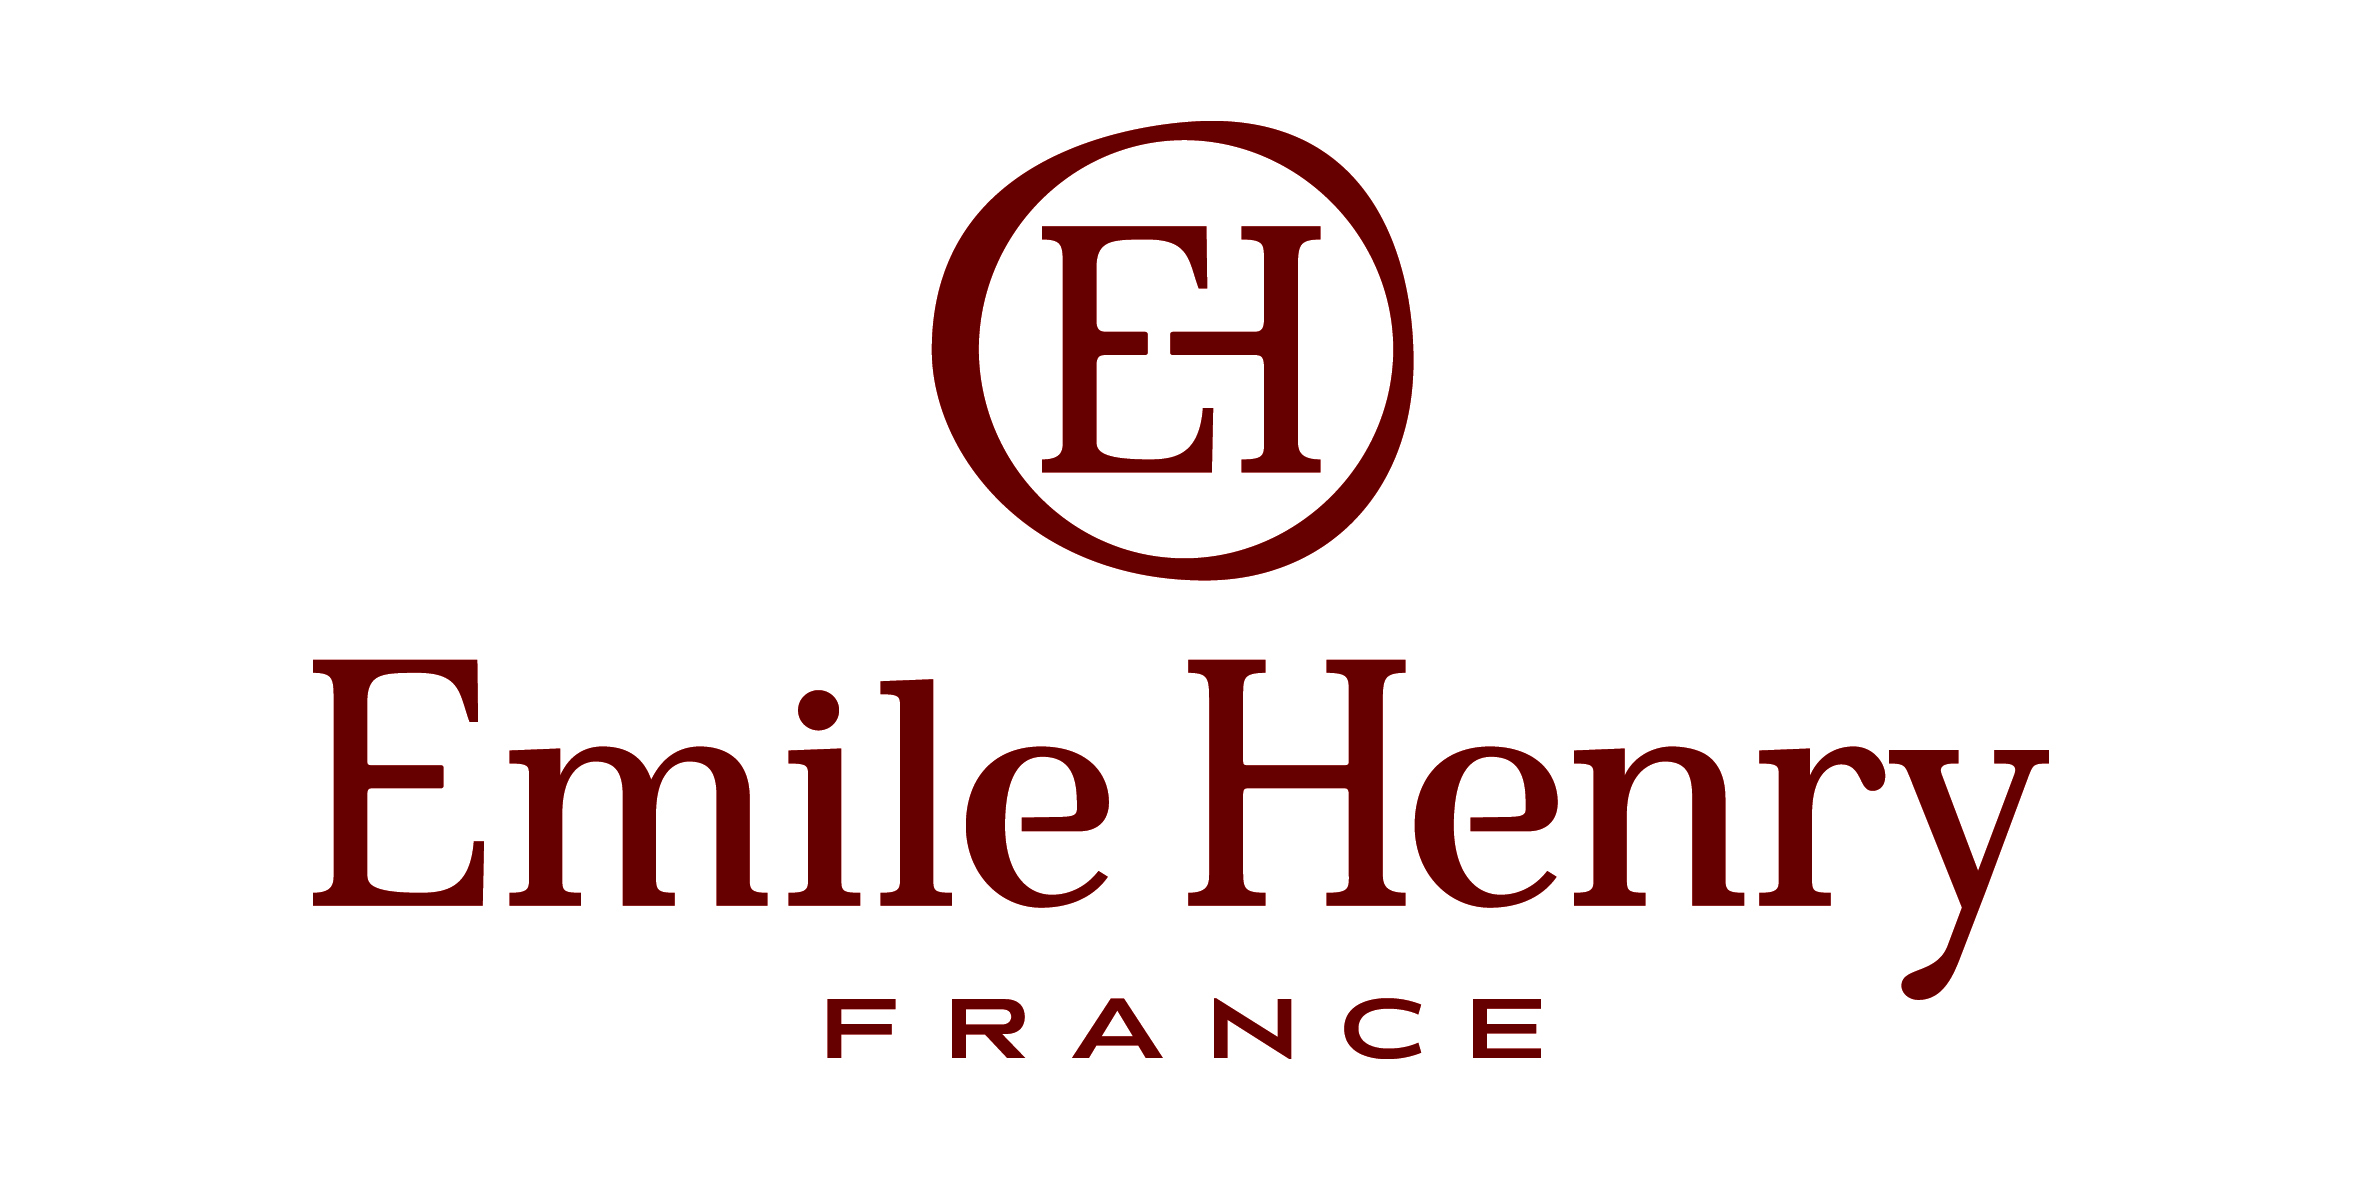 Emile Henry Logo